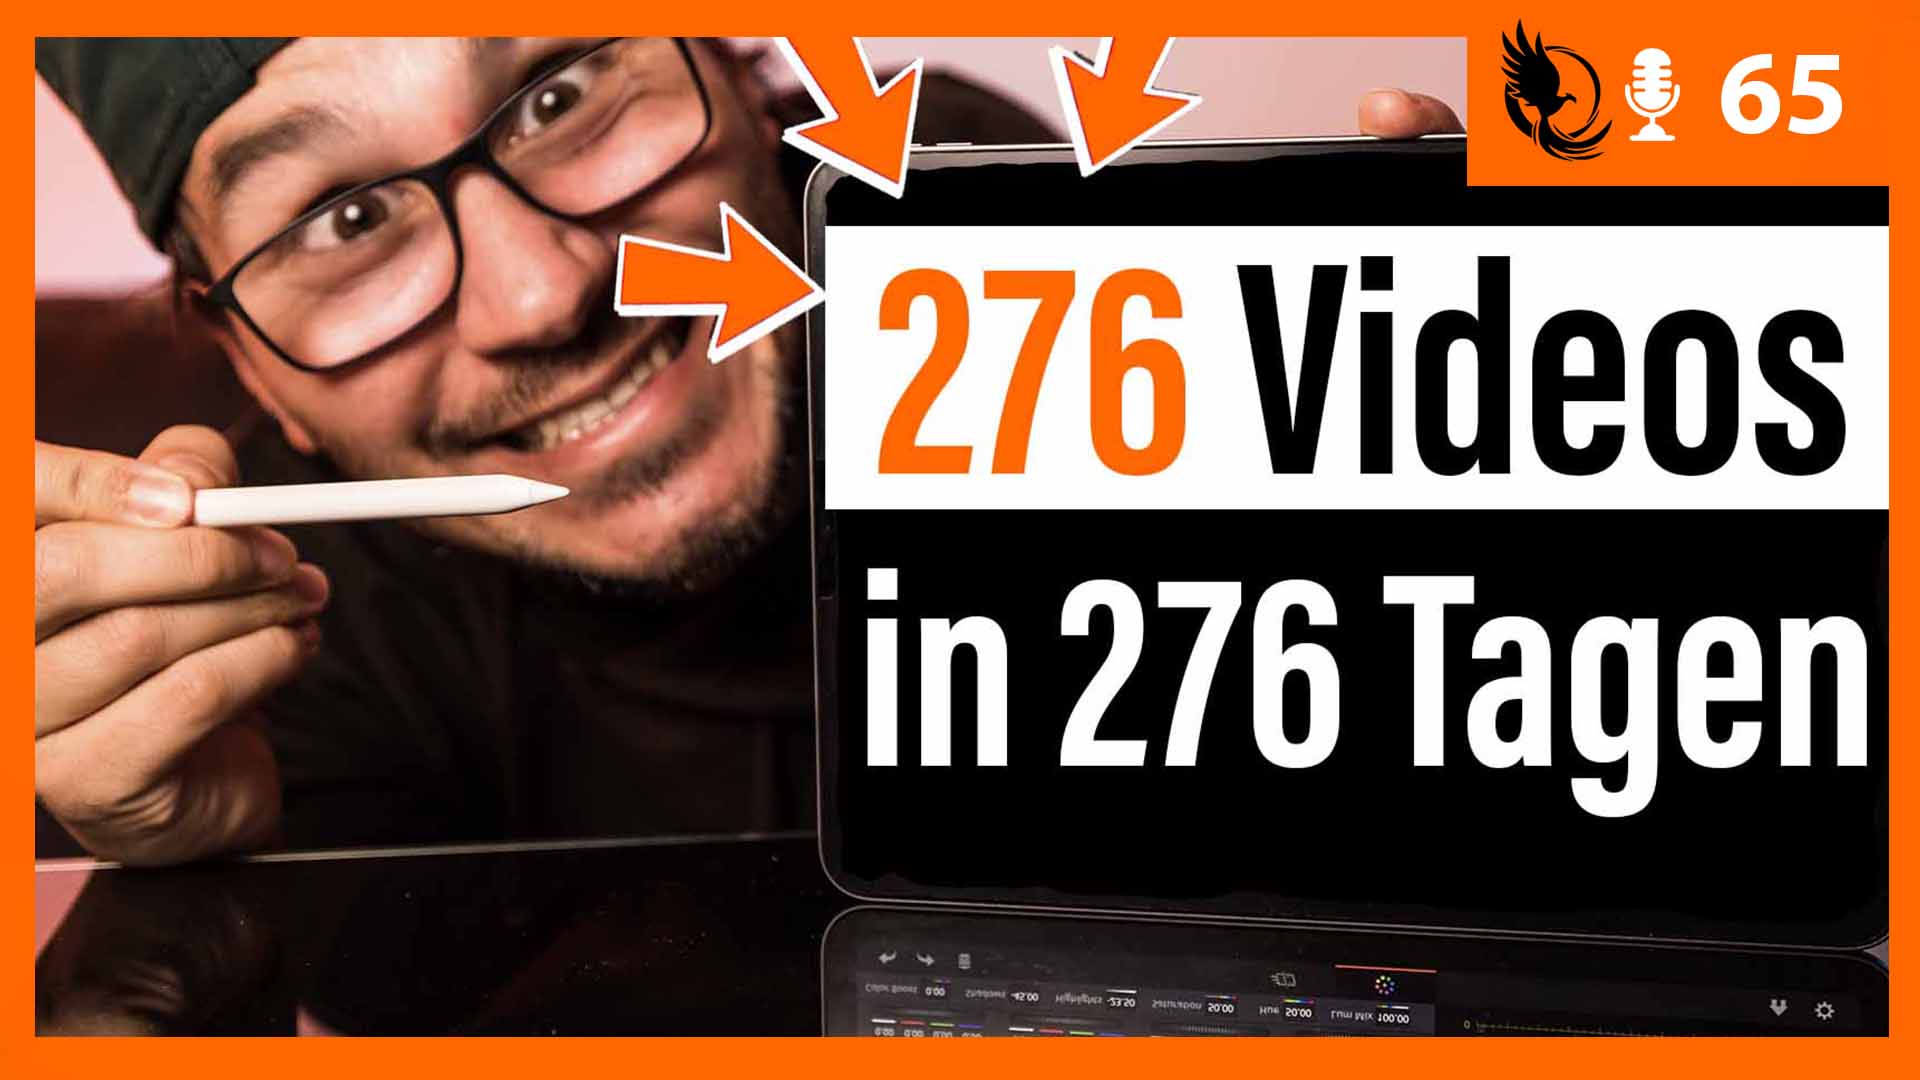 Meine Erfahrungen nach 276 Tagen jeden Tag Videos zu YouTube hochladen